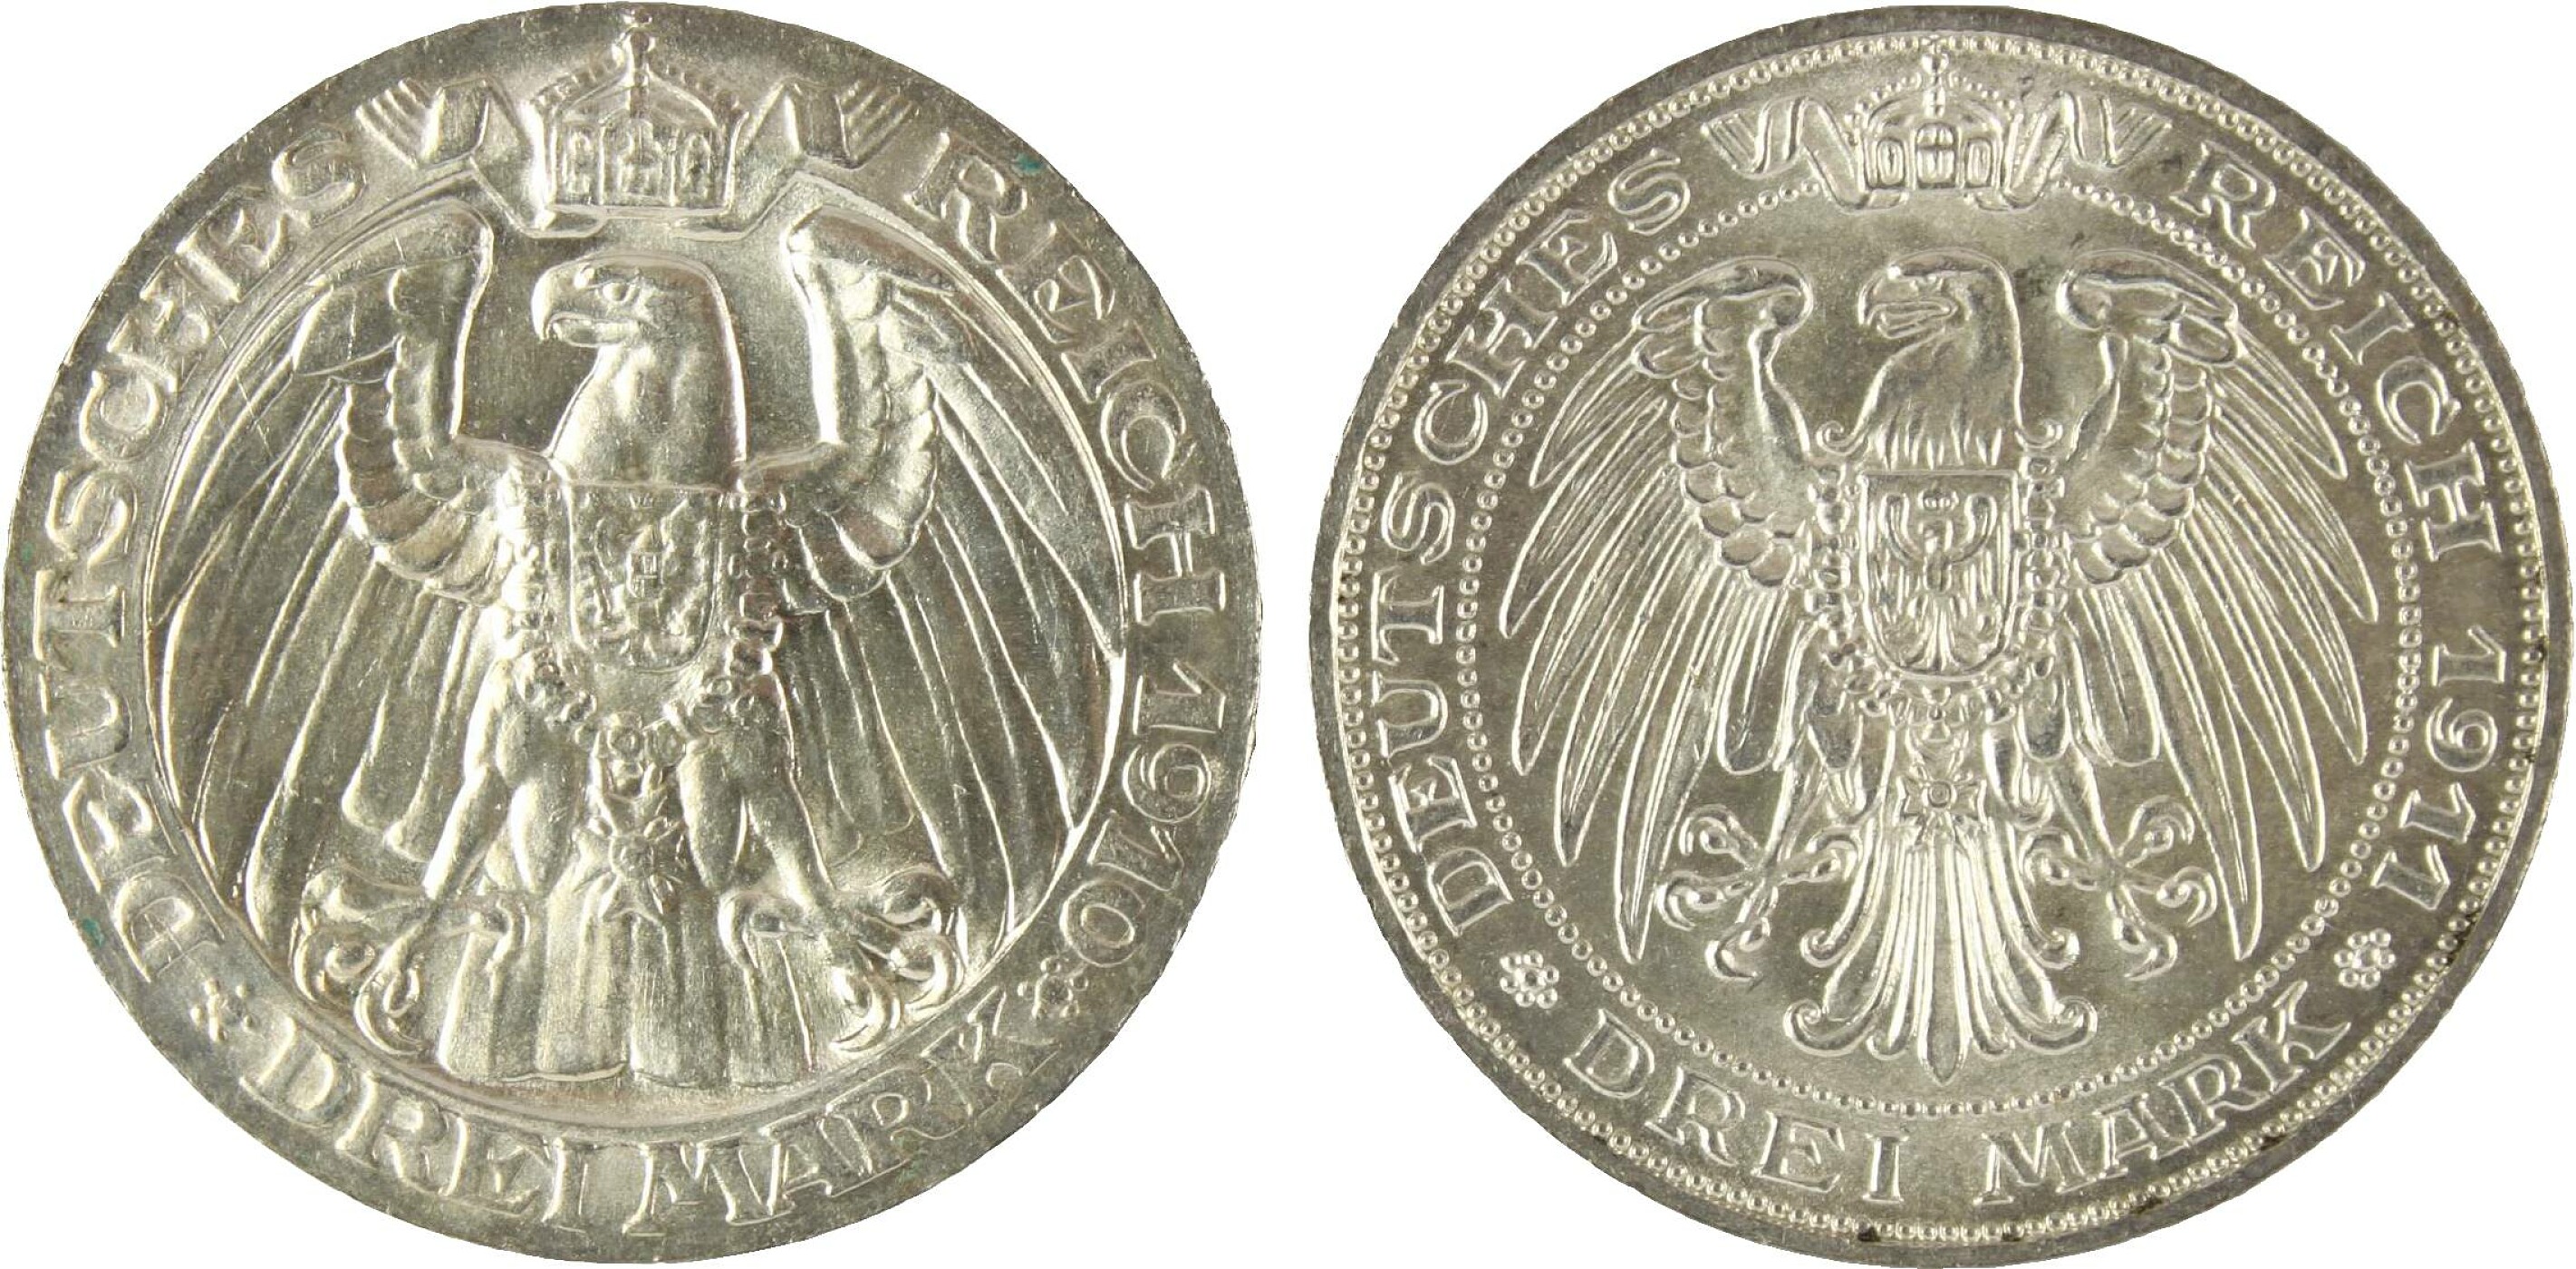 Königreich Preußen, - Image 2 of 2